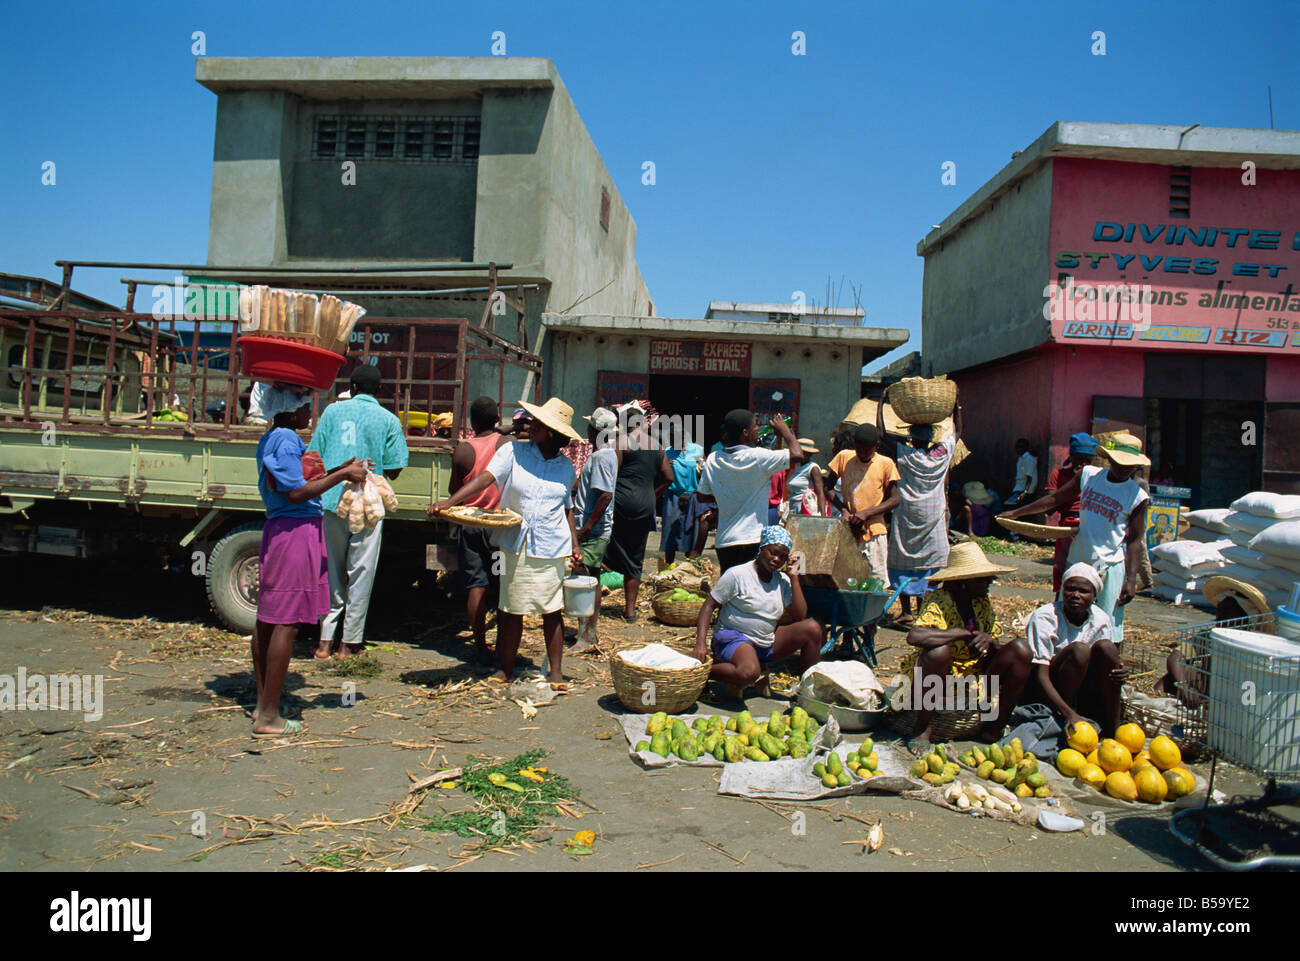 Les femmes vendent des fruits tropicaux et du pain sur le côté de la rue, Port-au-Prince, Haïti, Antilles, Amérique Centrale Banque D'Images